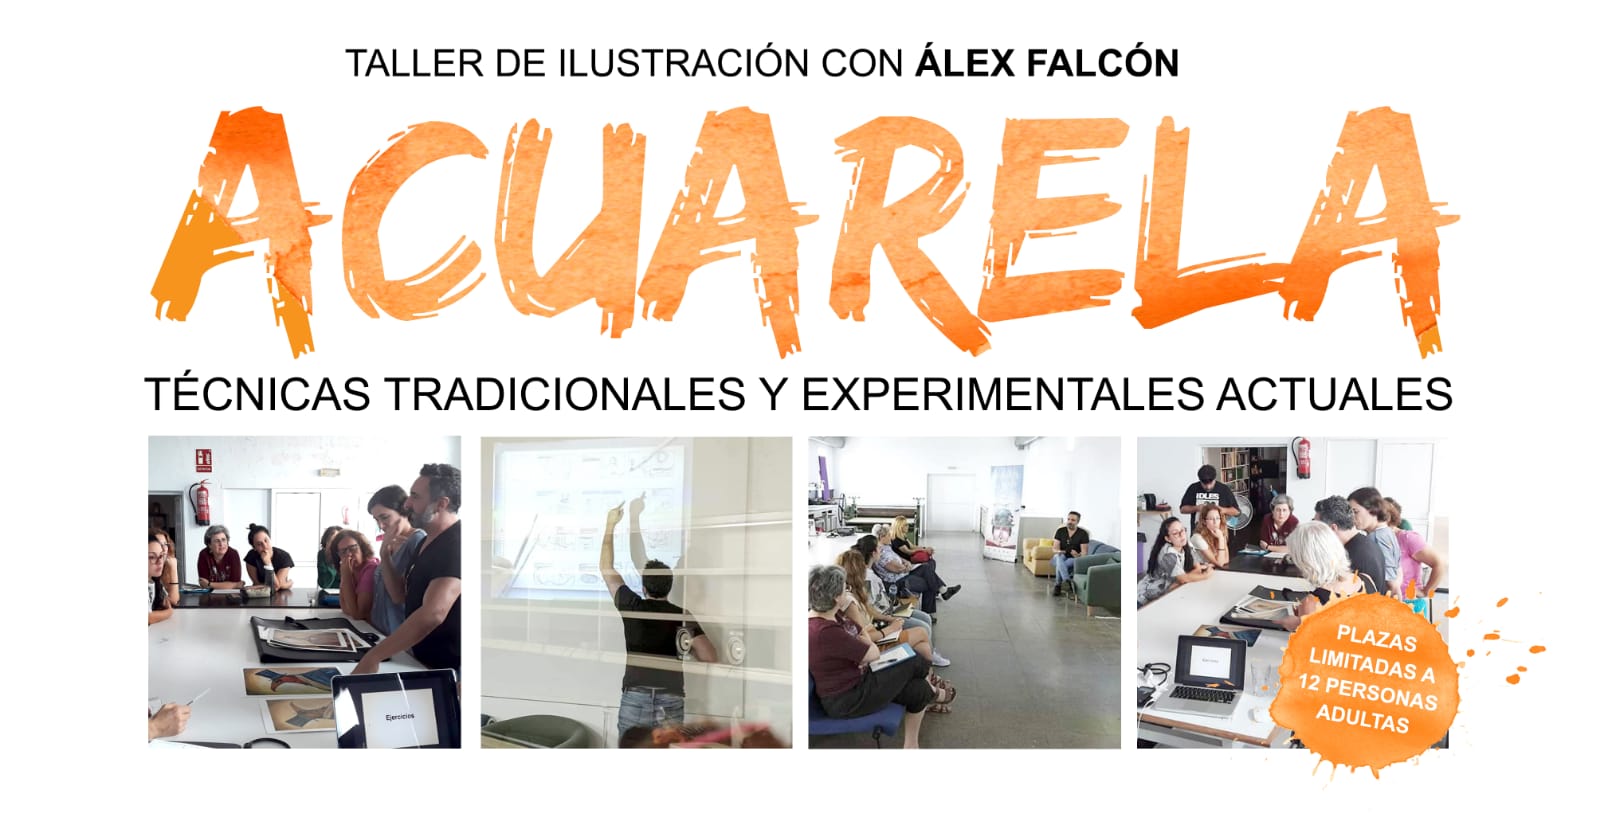 Taller de Ilustración con Álex Falcón: Acuarelas y Mixtas